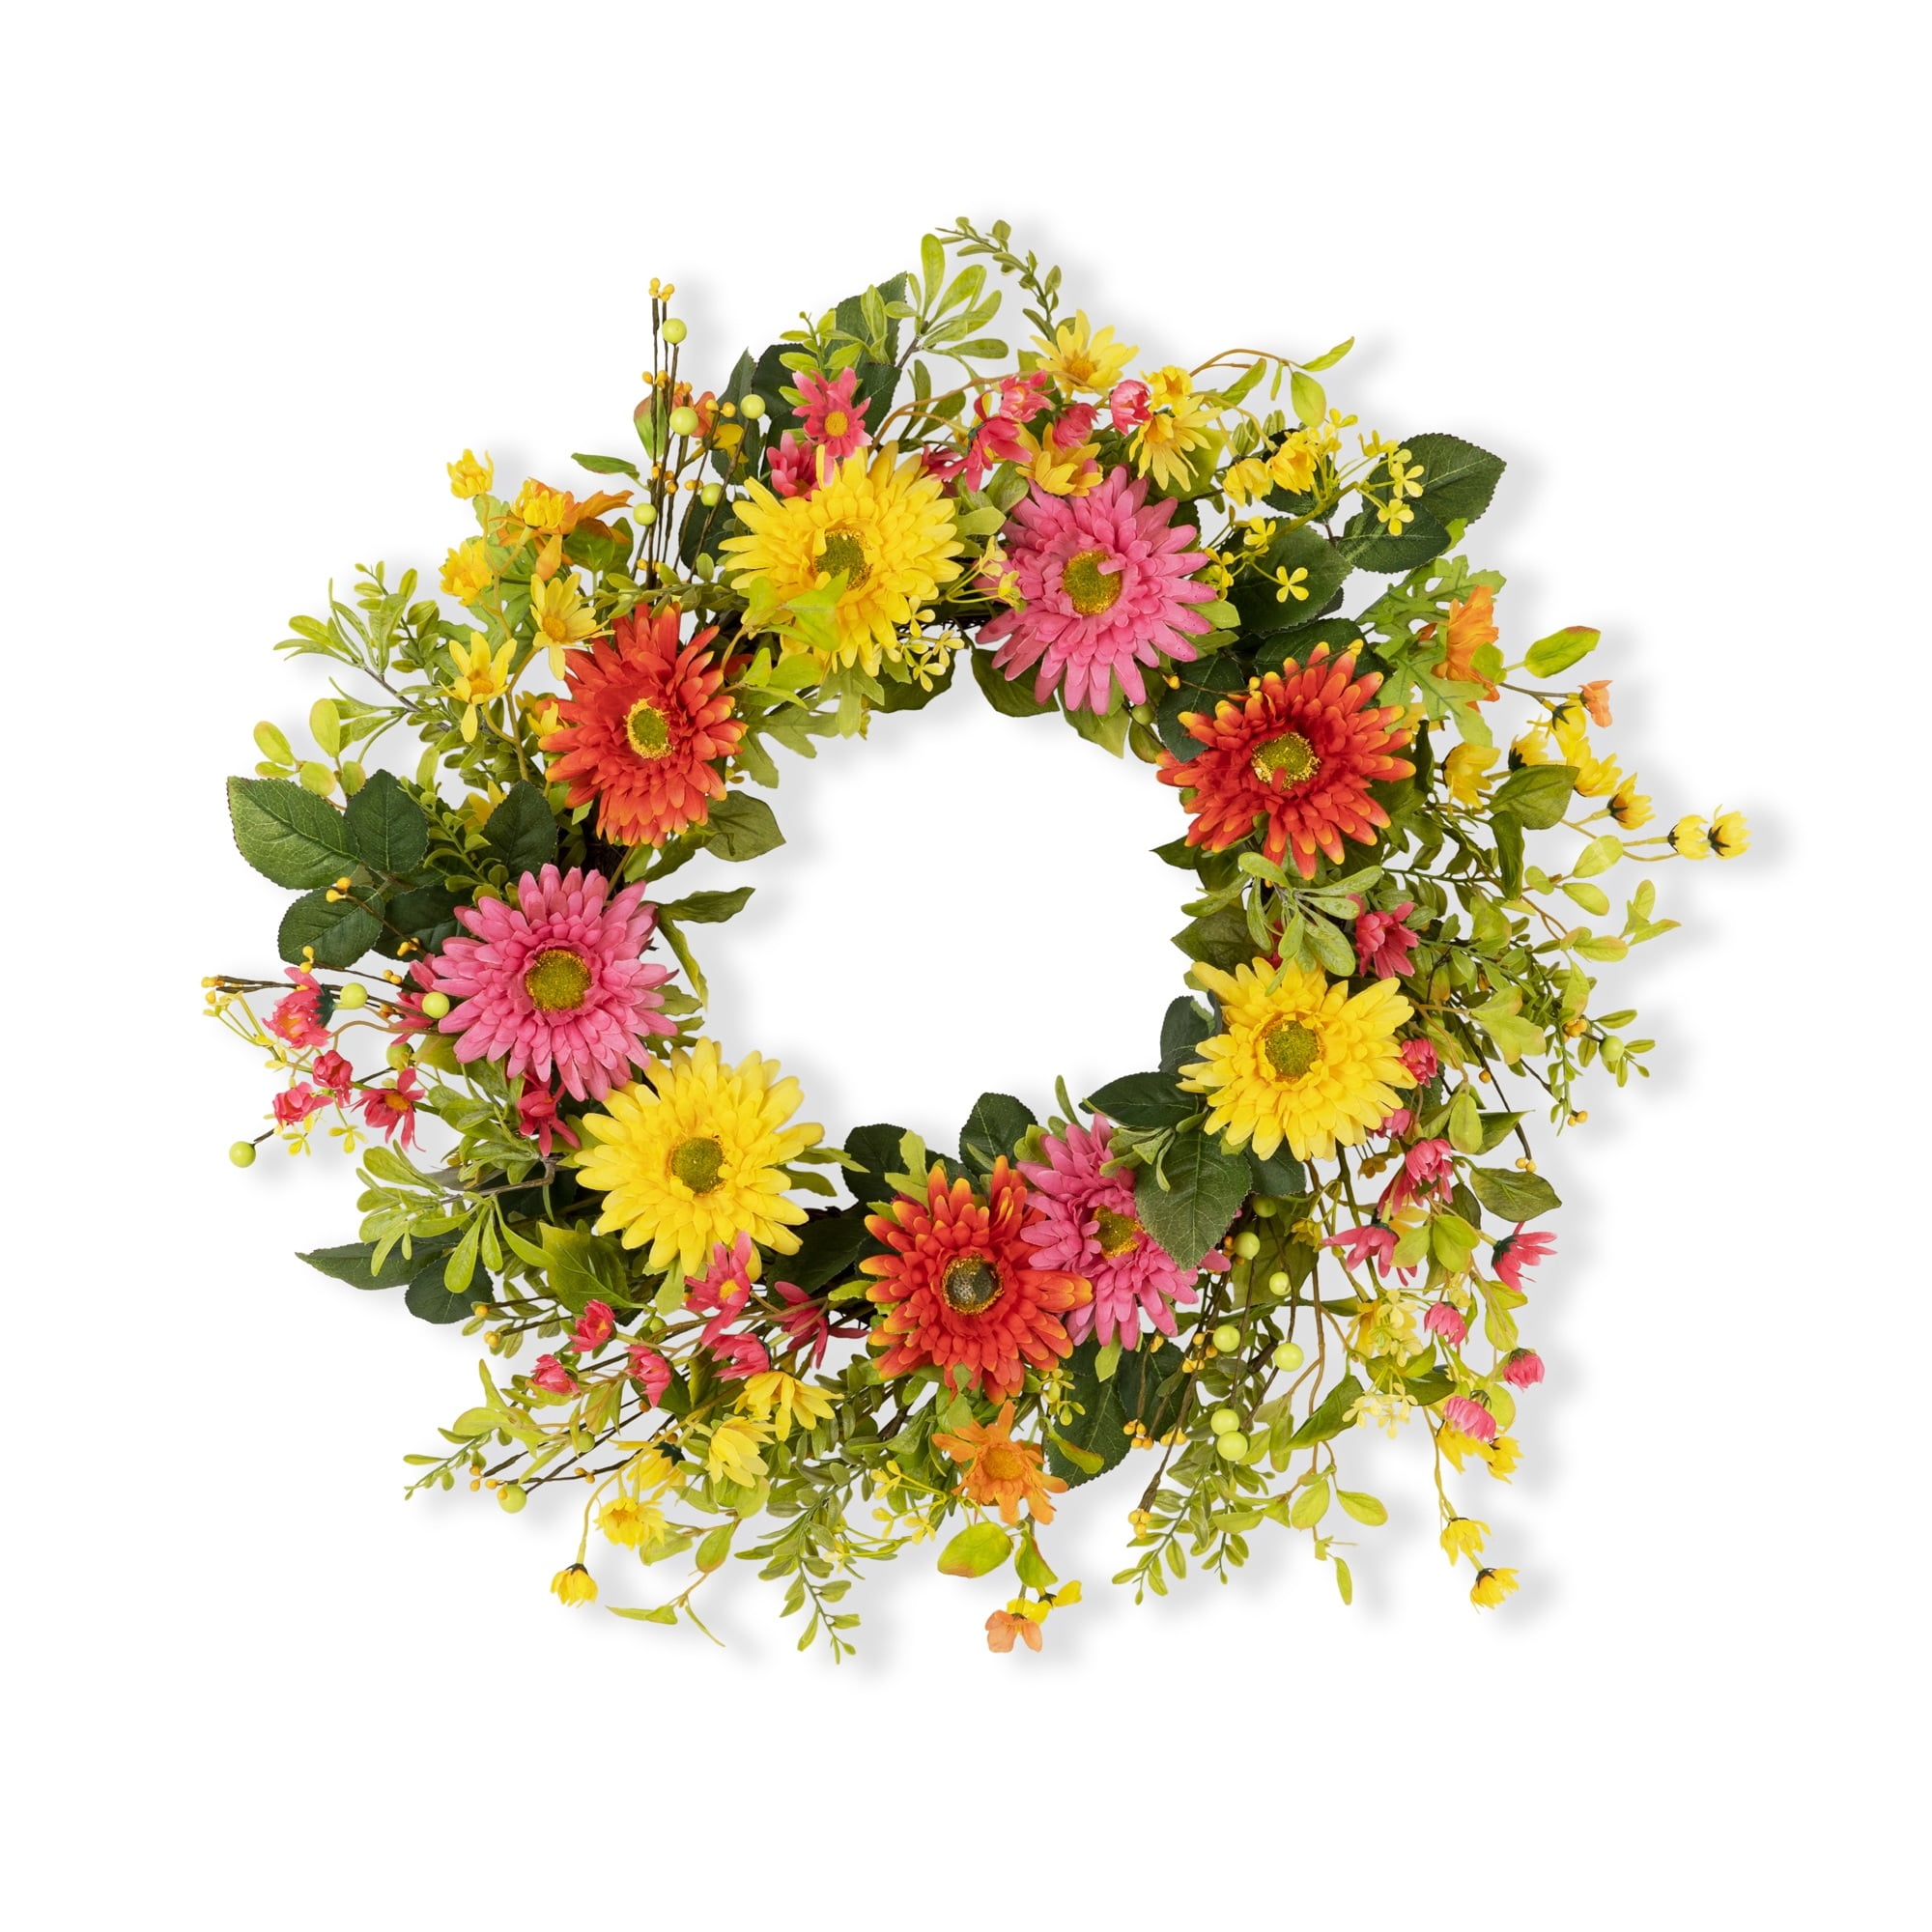 Mixed Gerbera Daisy Wreath 25"D Fabric